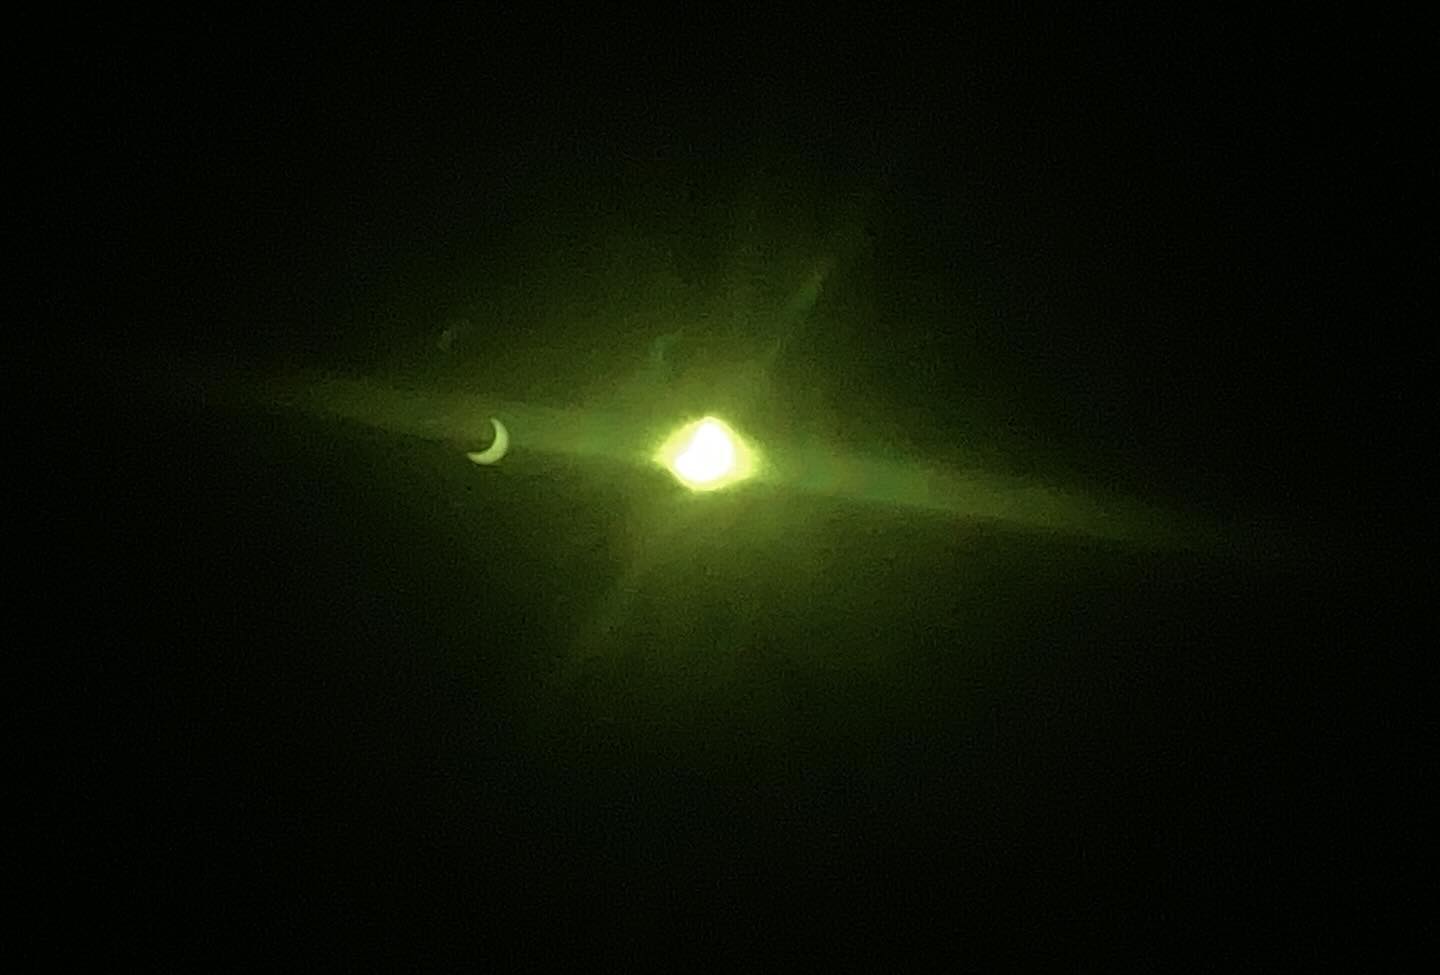 #Eclipse parcial 2023.El reflejo de los cristales de la cámara, junto con el cristal del filtro, creó un reflejo que permite apreciar el eclipse en el celular